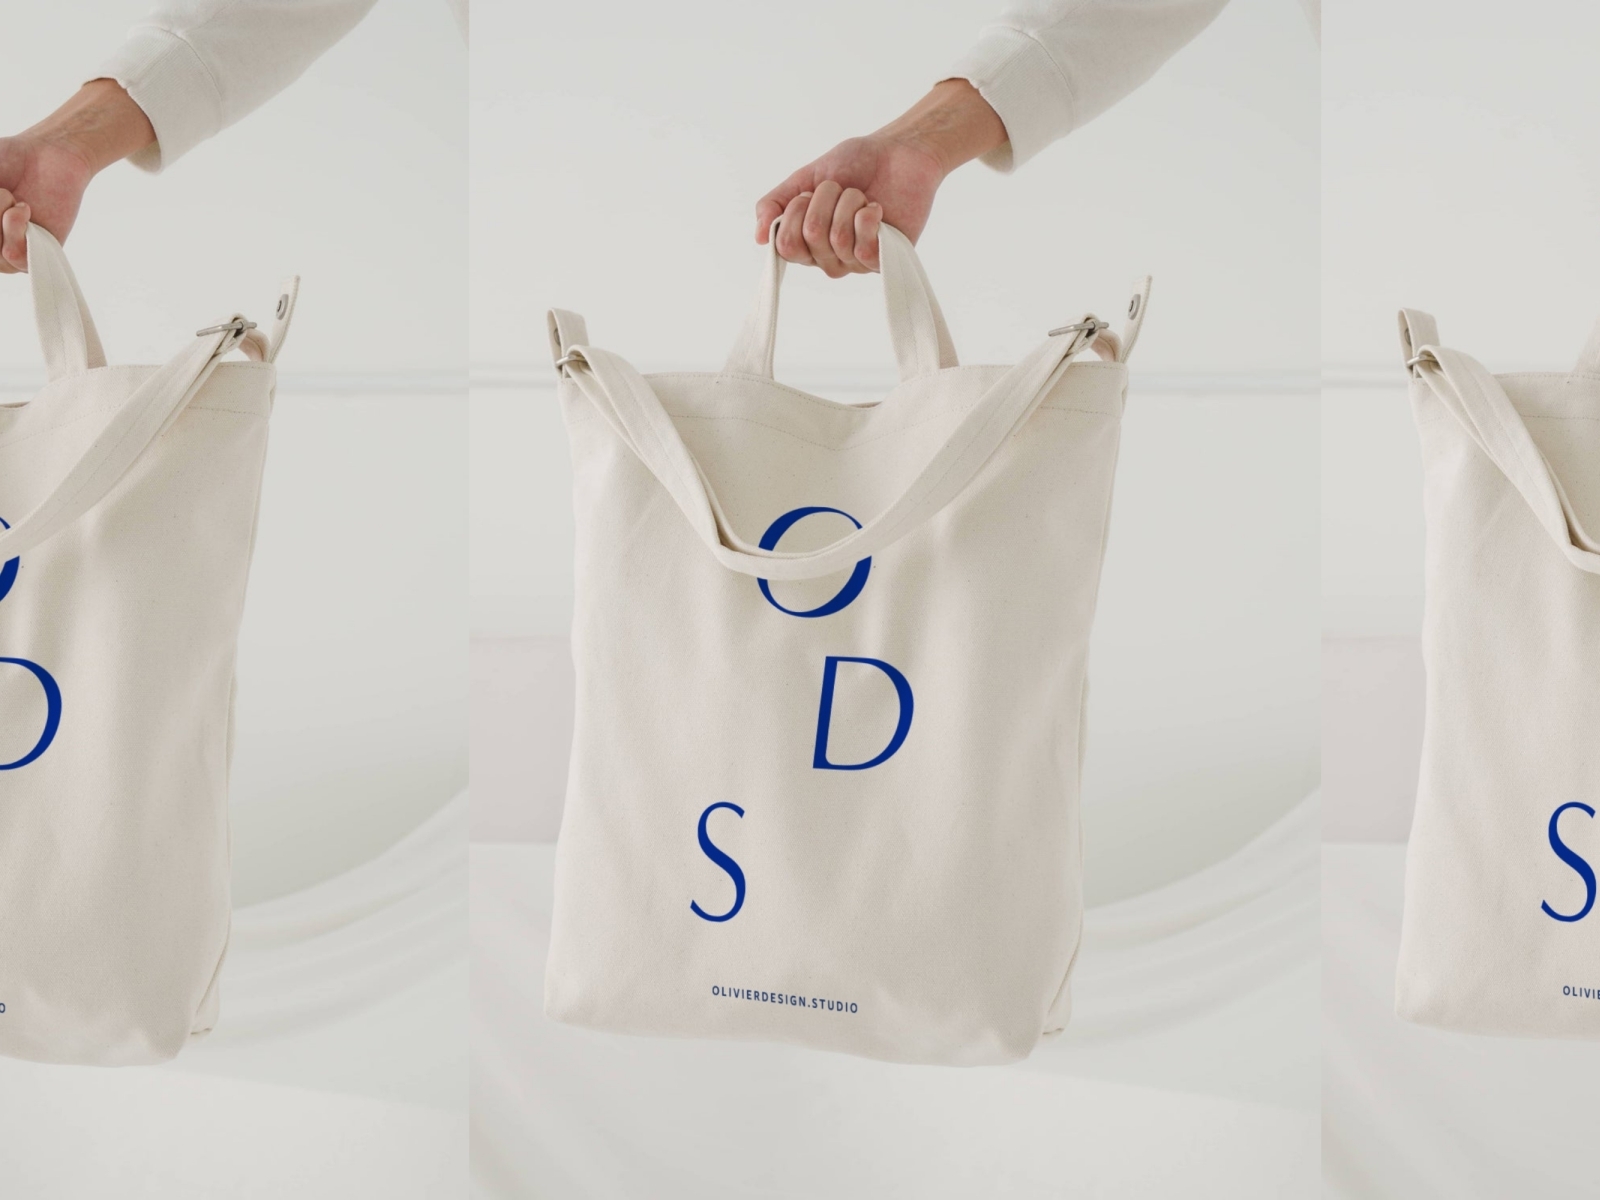 ODS Bag Design by Heidi Gillett on Dribbble